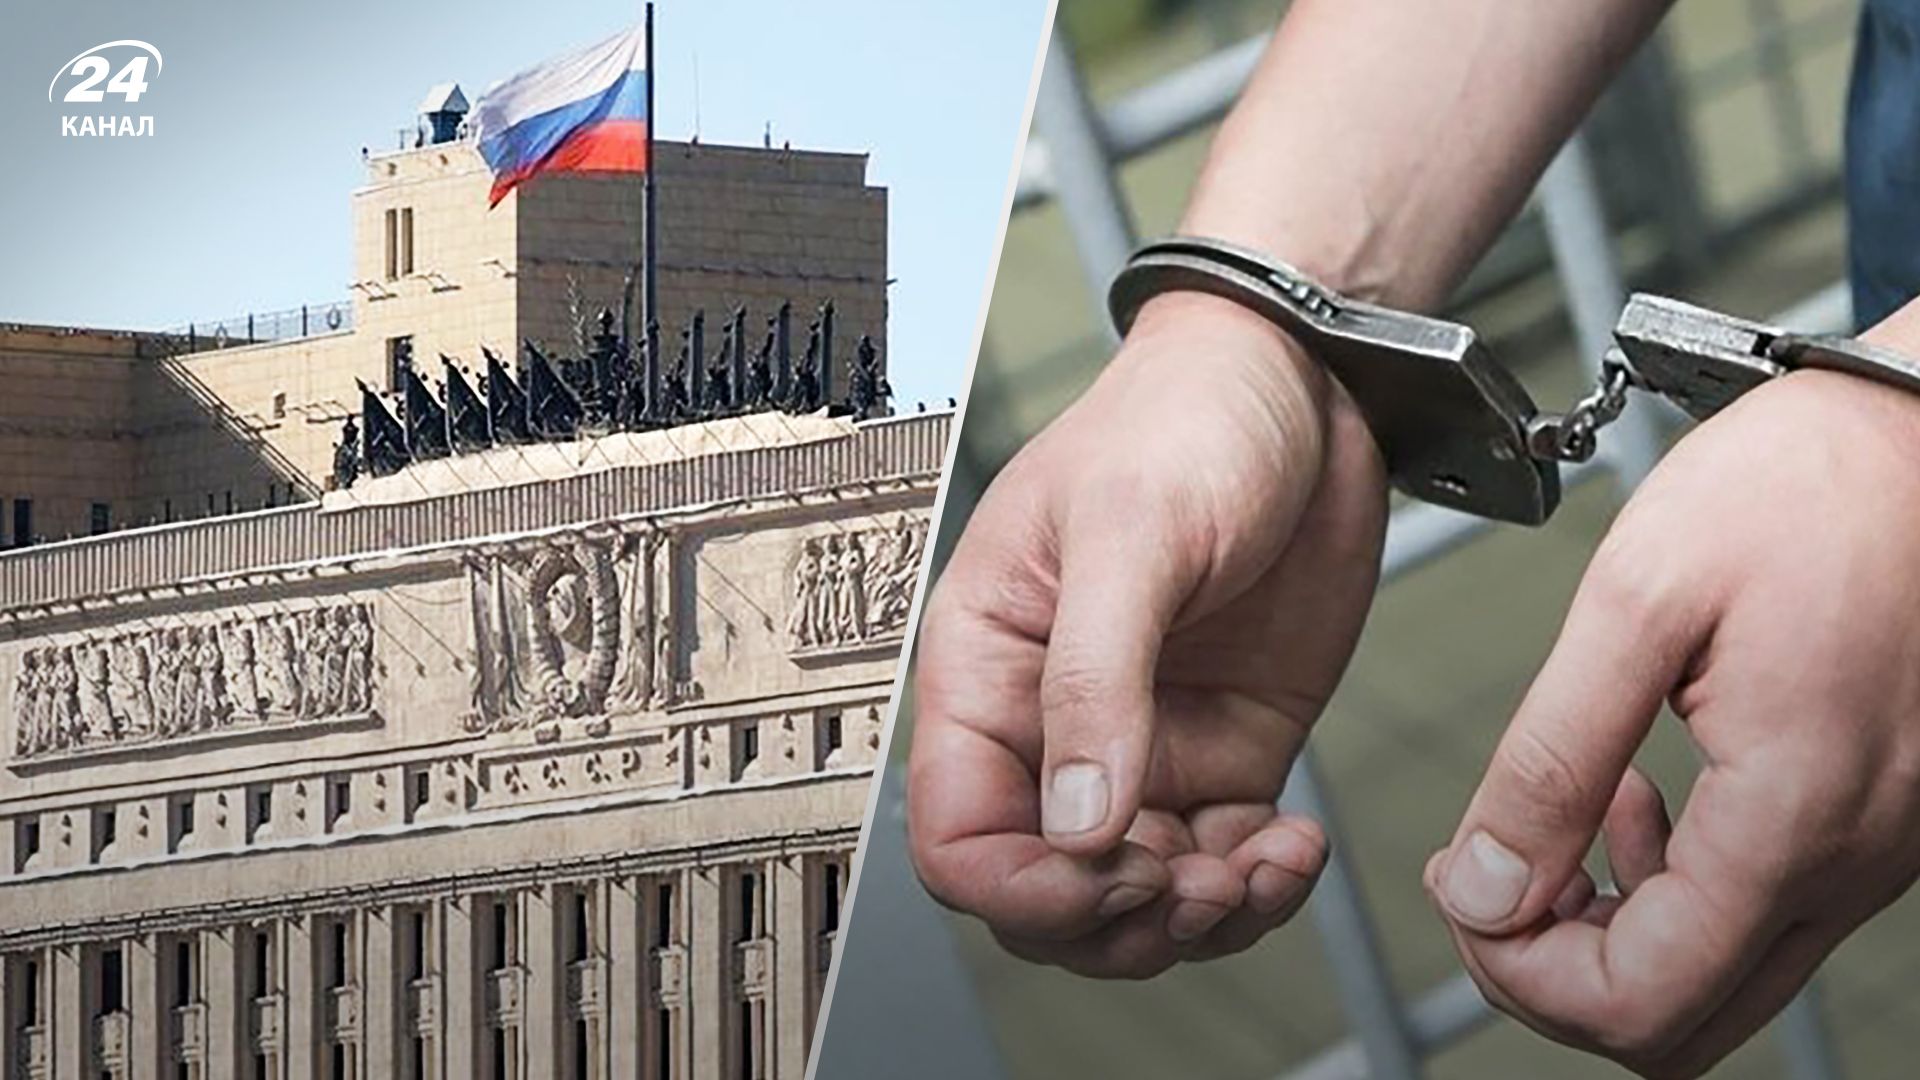 В Минобороны России хотел проникнуть мужчина с пистолетом – его задержали